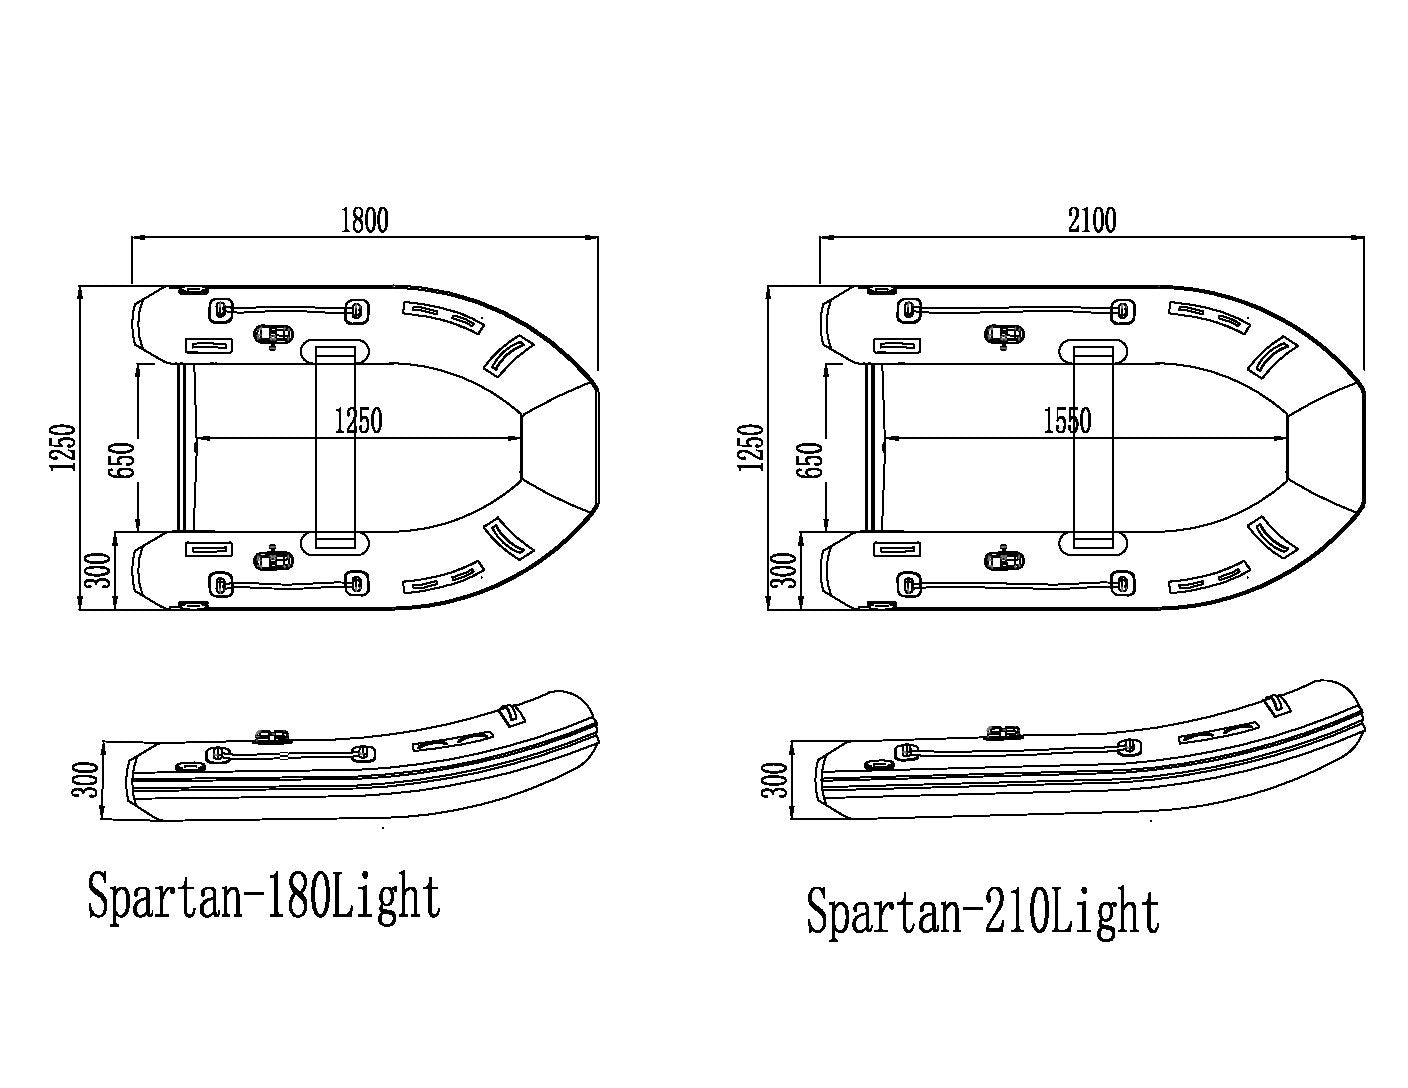 Spartan 180 Light - Spartan Boats - spartan light - Spartan Boats - Spa/180/gre/lig